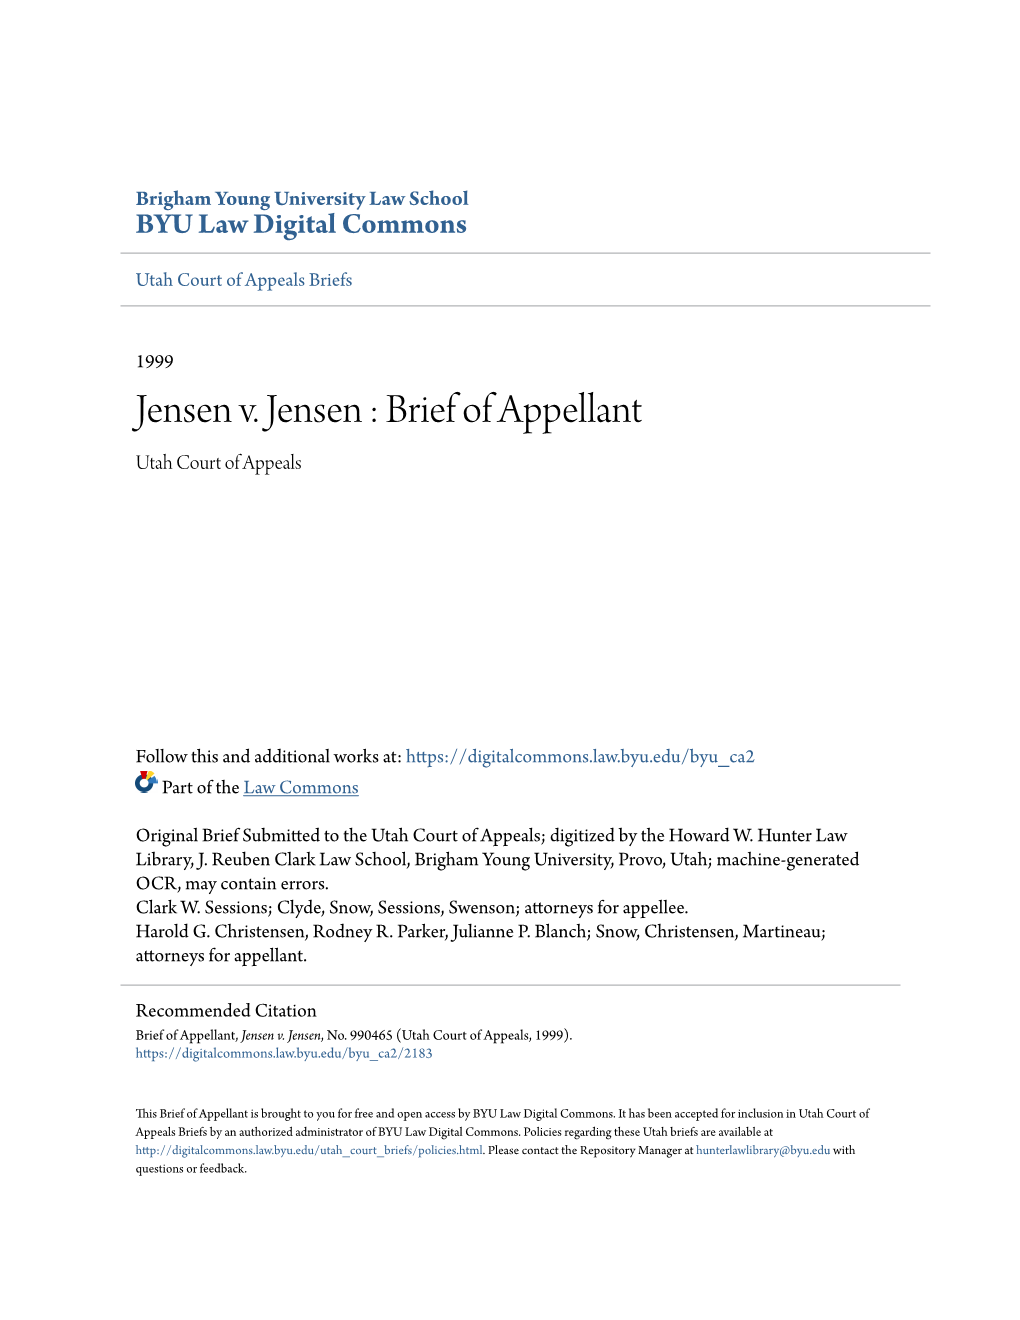 Jensen V. Jensen : Brief of Appellant Utah Court of Appeals